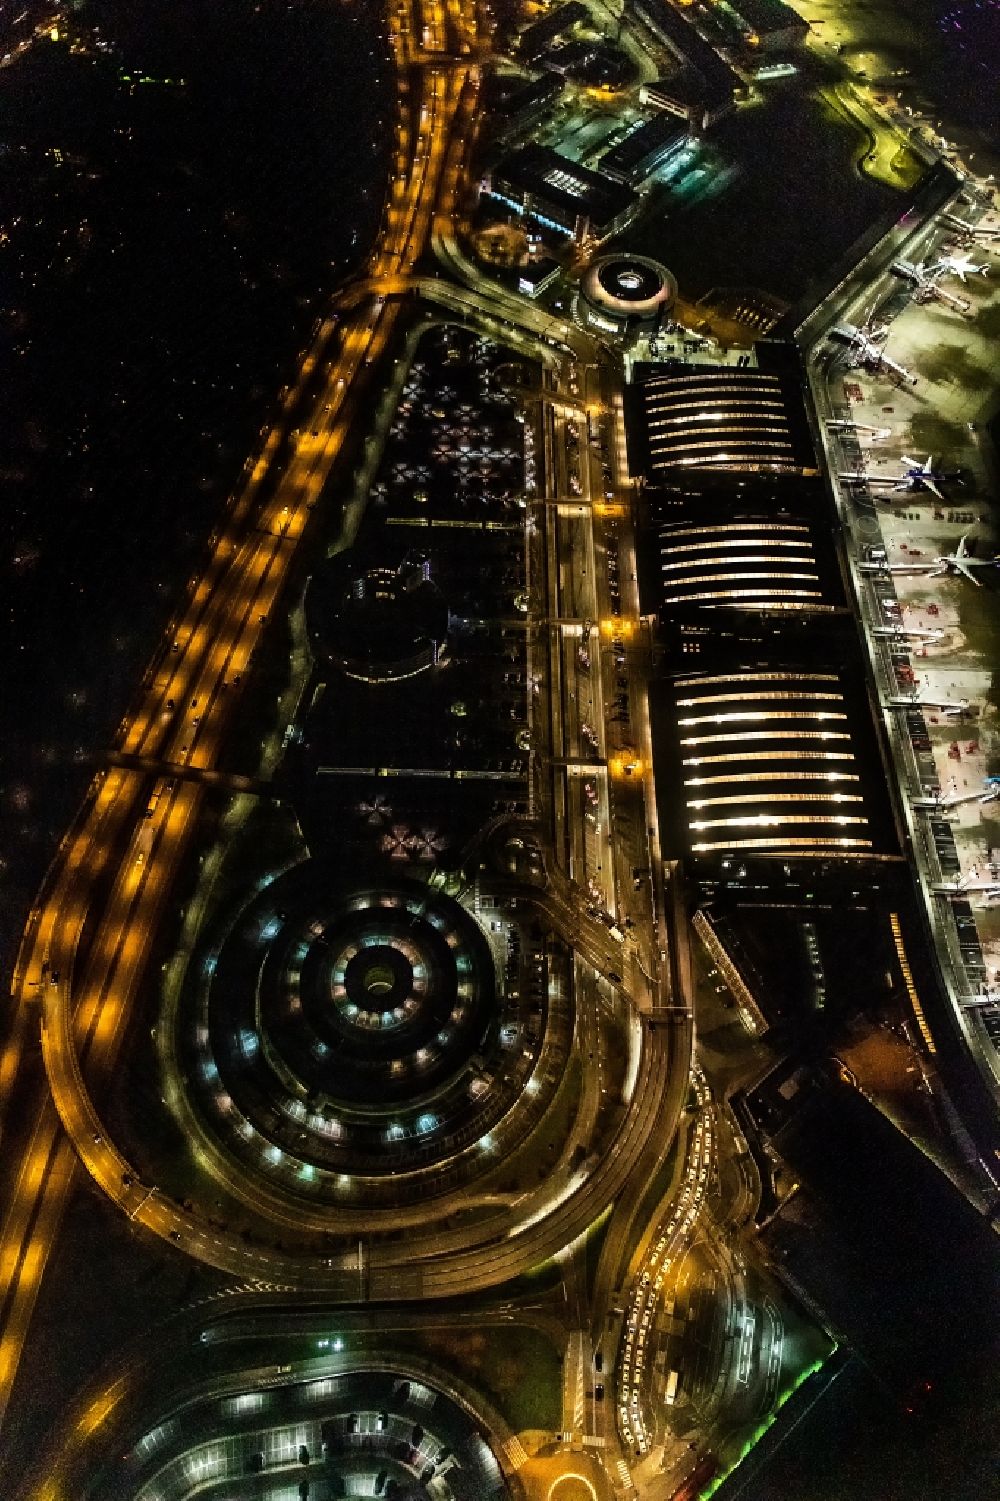 Nacht-Luftaufnahme Hamburg - Nachtluftbild Abfertigungs- Gebäude und Terminals auf dem Gelände des Flughafen in Hamburg, Deutschland